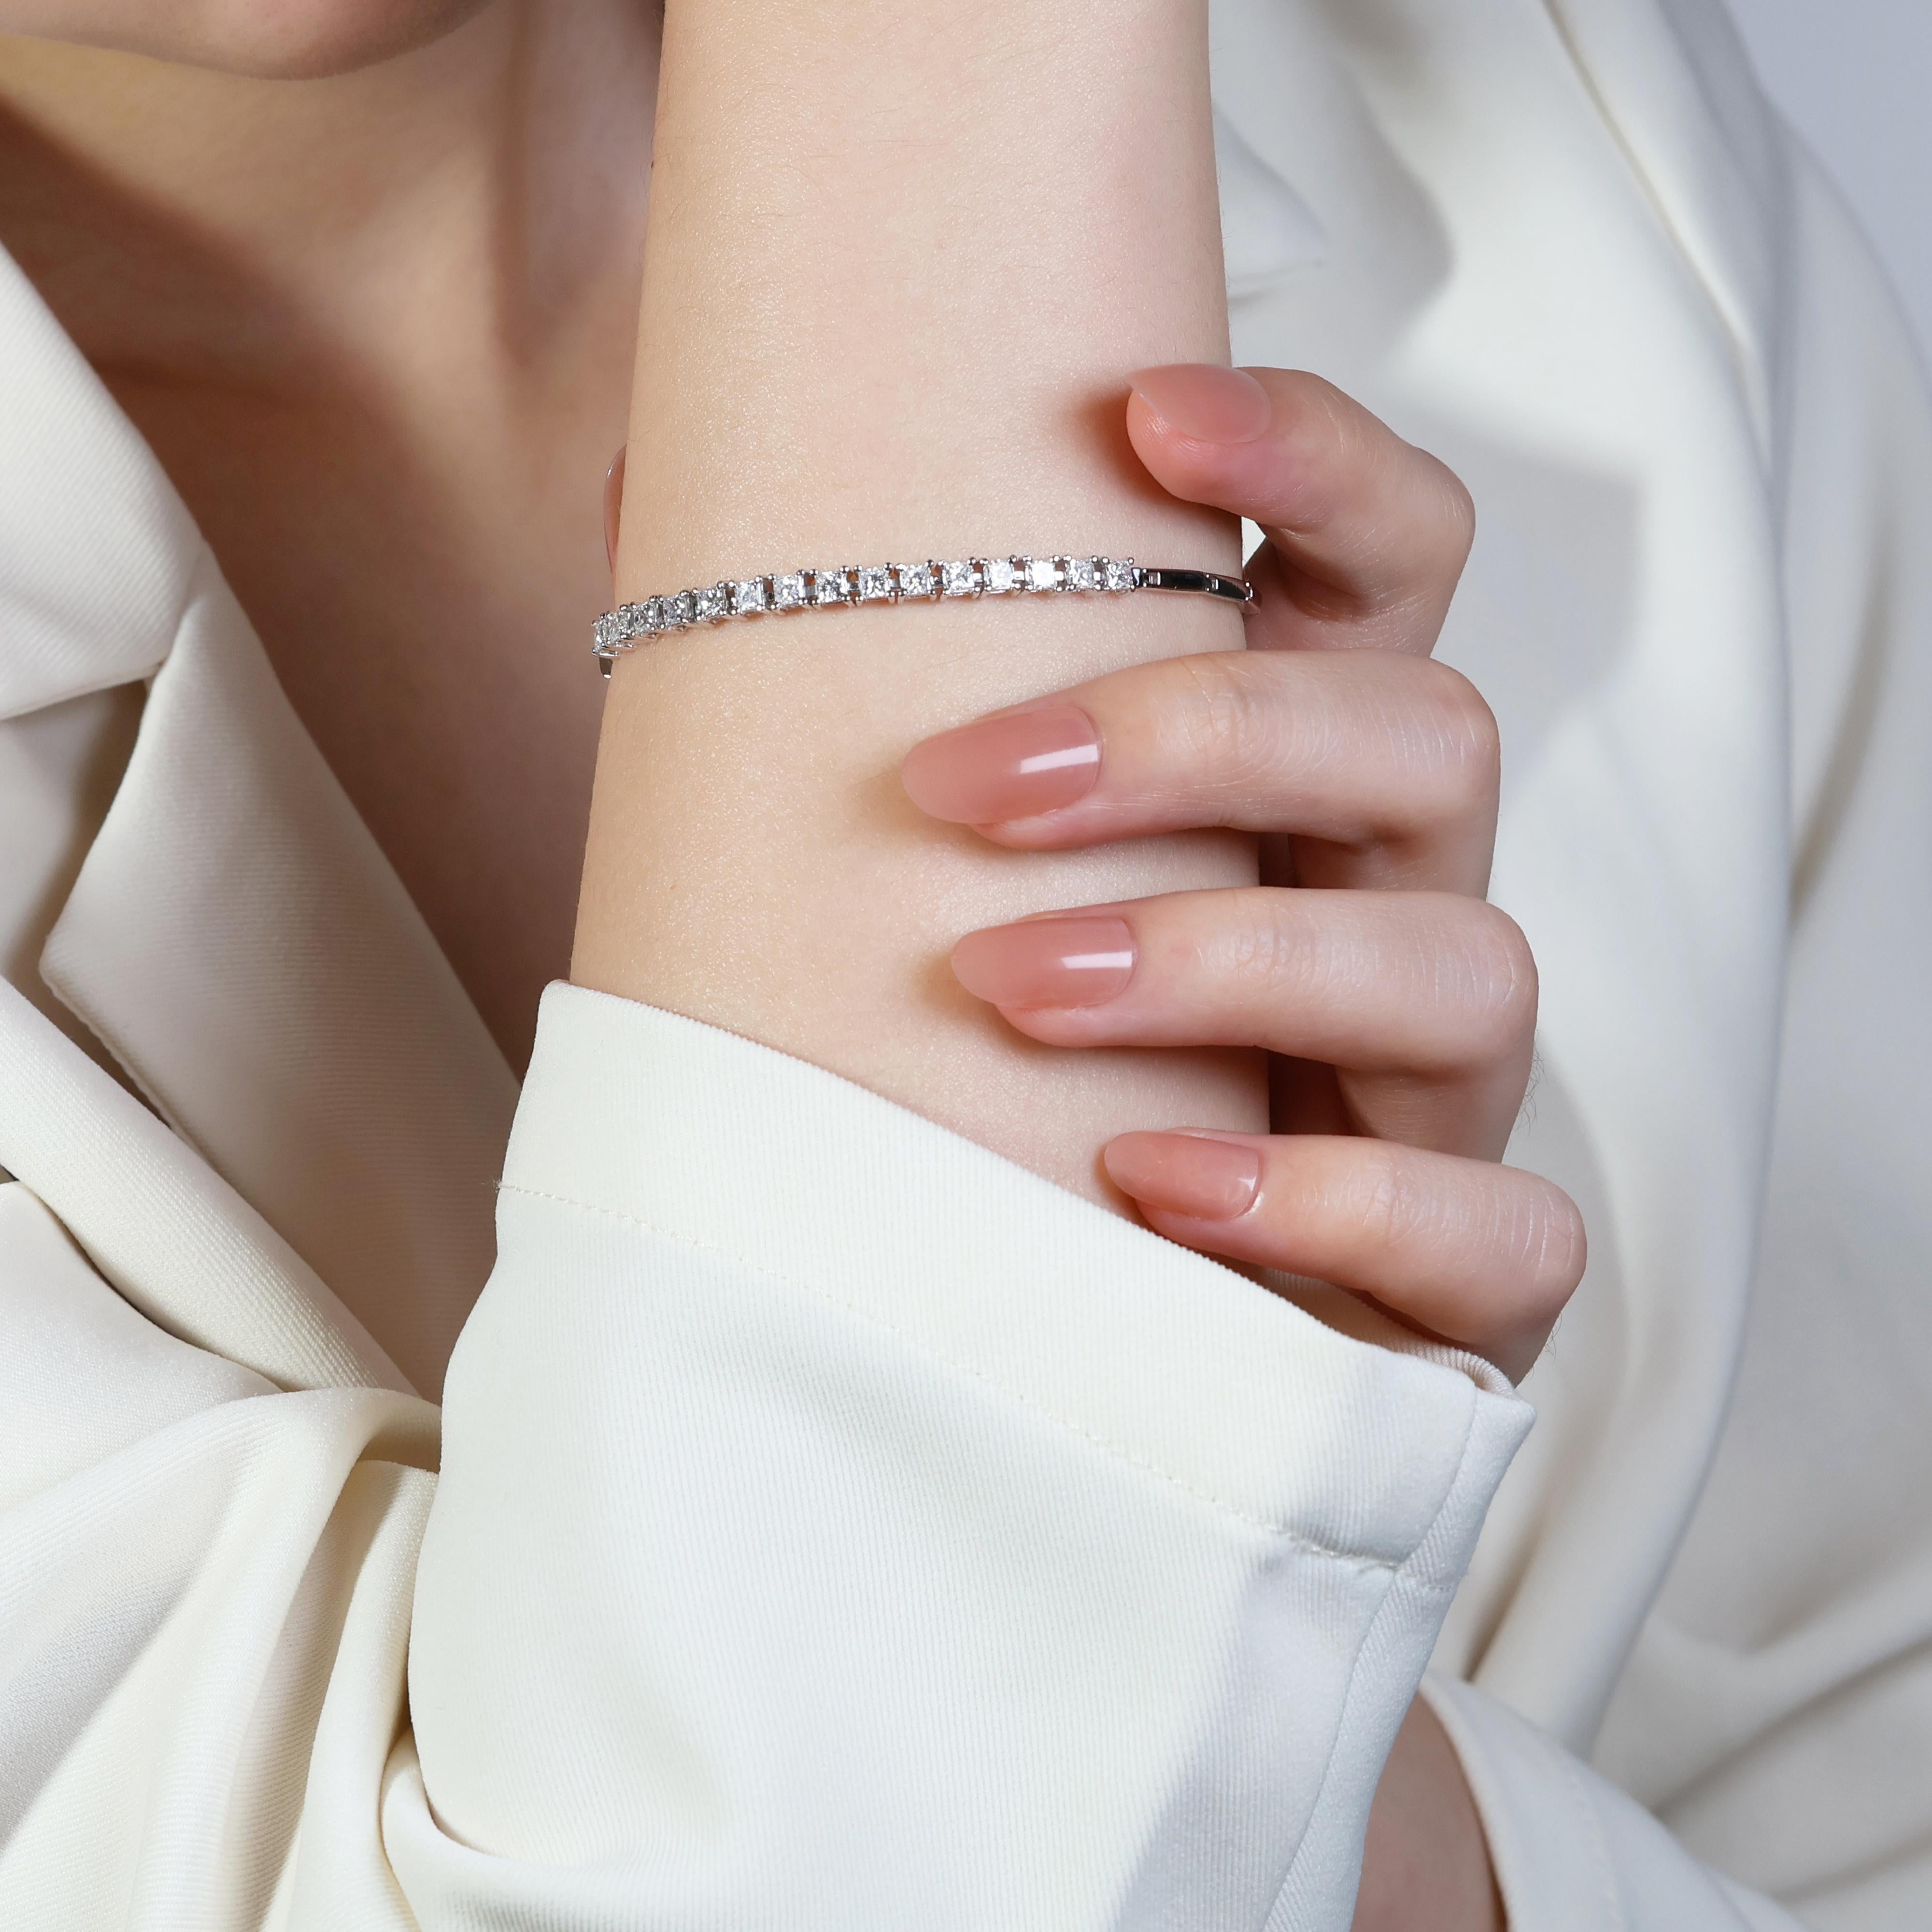 Dieses exquisite Armband präsentiert 15 bezaubernde birnenförmige Diamanten, die sorgfältig in glänzendes 18 Karat Weißgold gefasst sind. Die Diamanten haben ein Gesamtgewicht von 1,20 Karat und strahlen mit einem außergewöhnlichen F-Farbgrad und